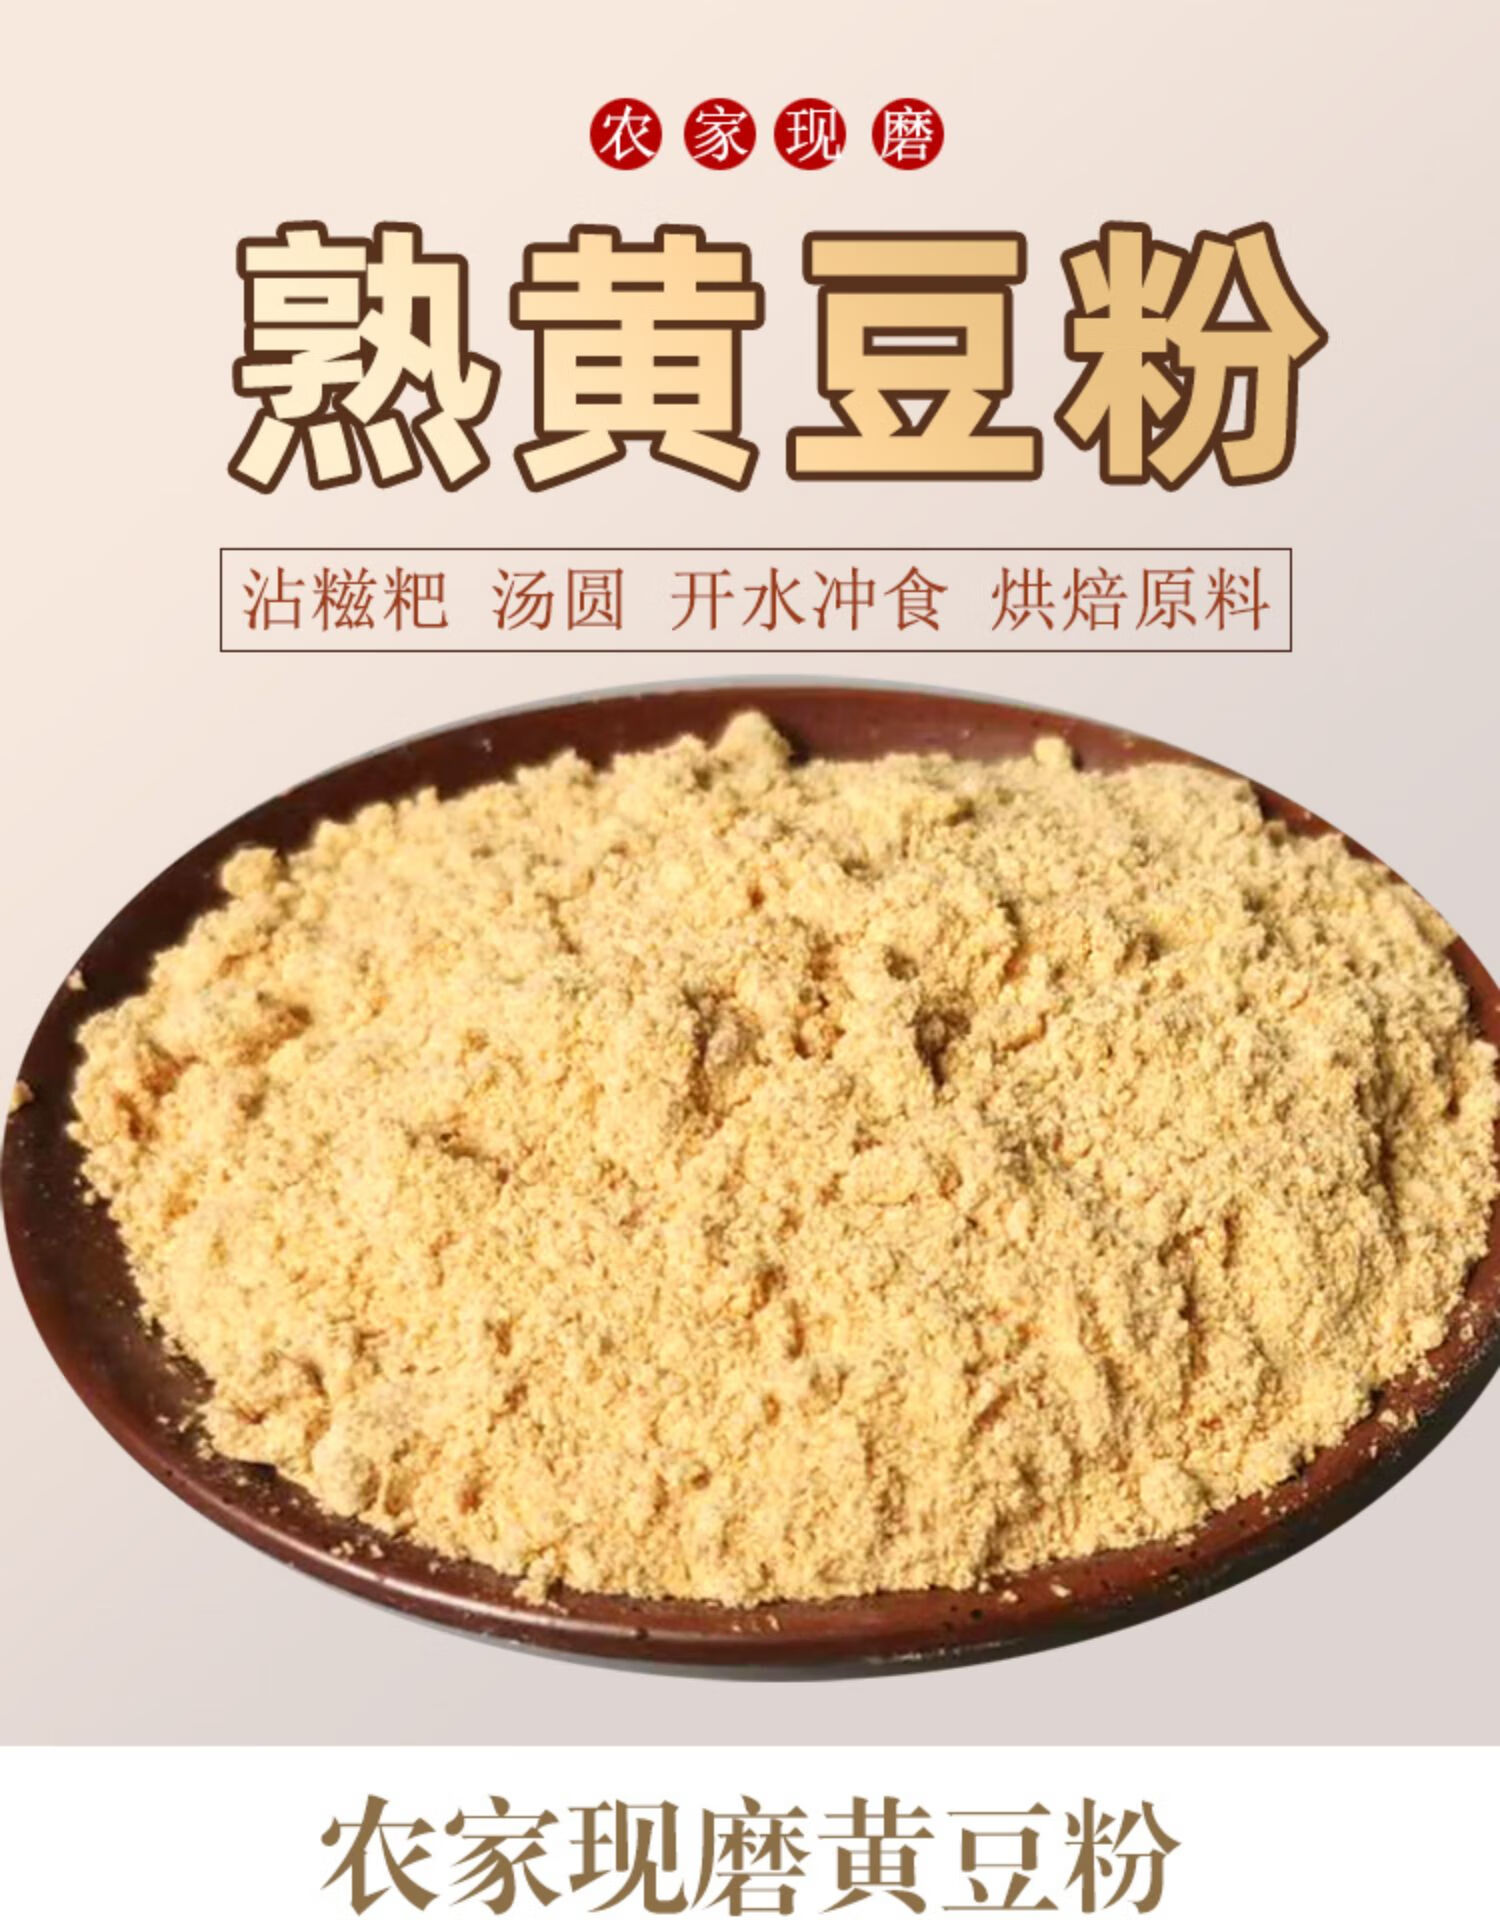 熟黄豆粉贵州现磨纯黄豆面粉即食糍粑烧烤料炒熟的黄豆粉非转基因